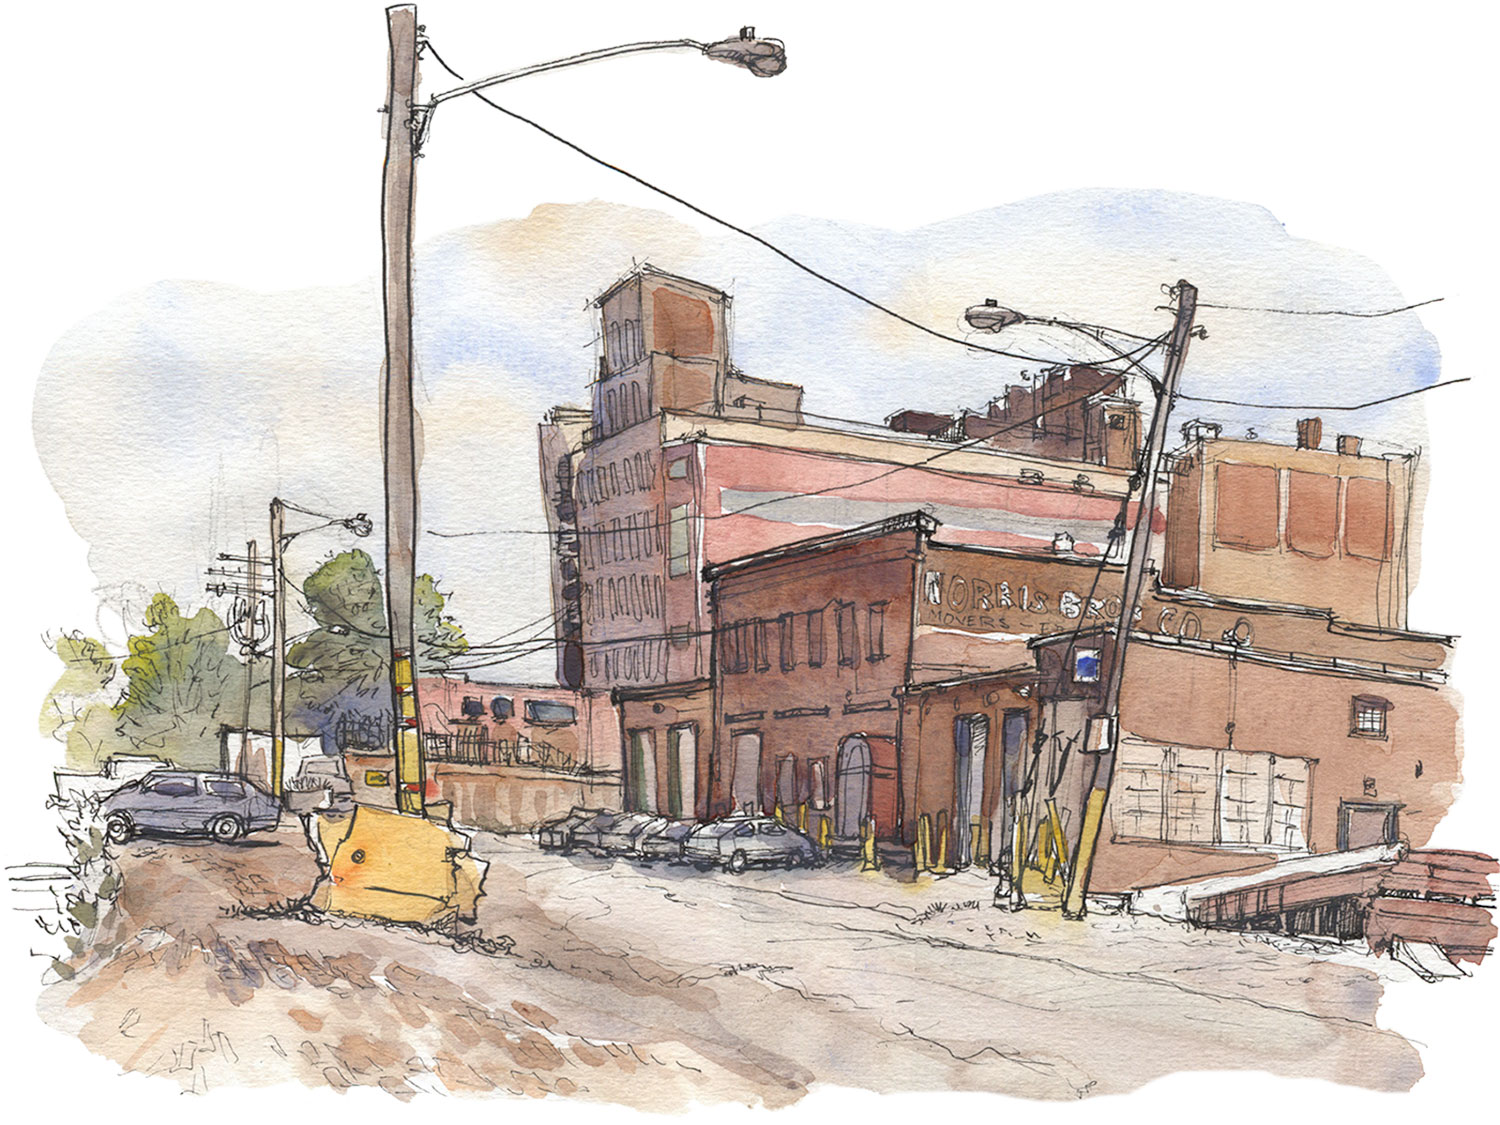  Cleveland street,  Sketchbook , 2011 